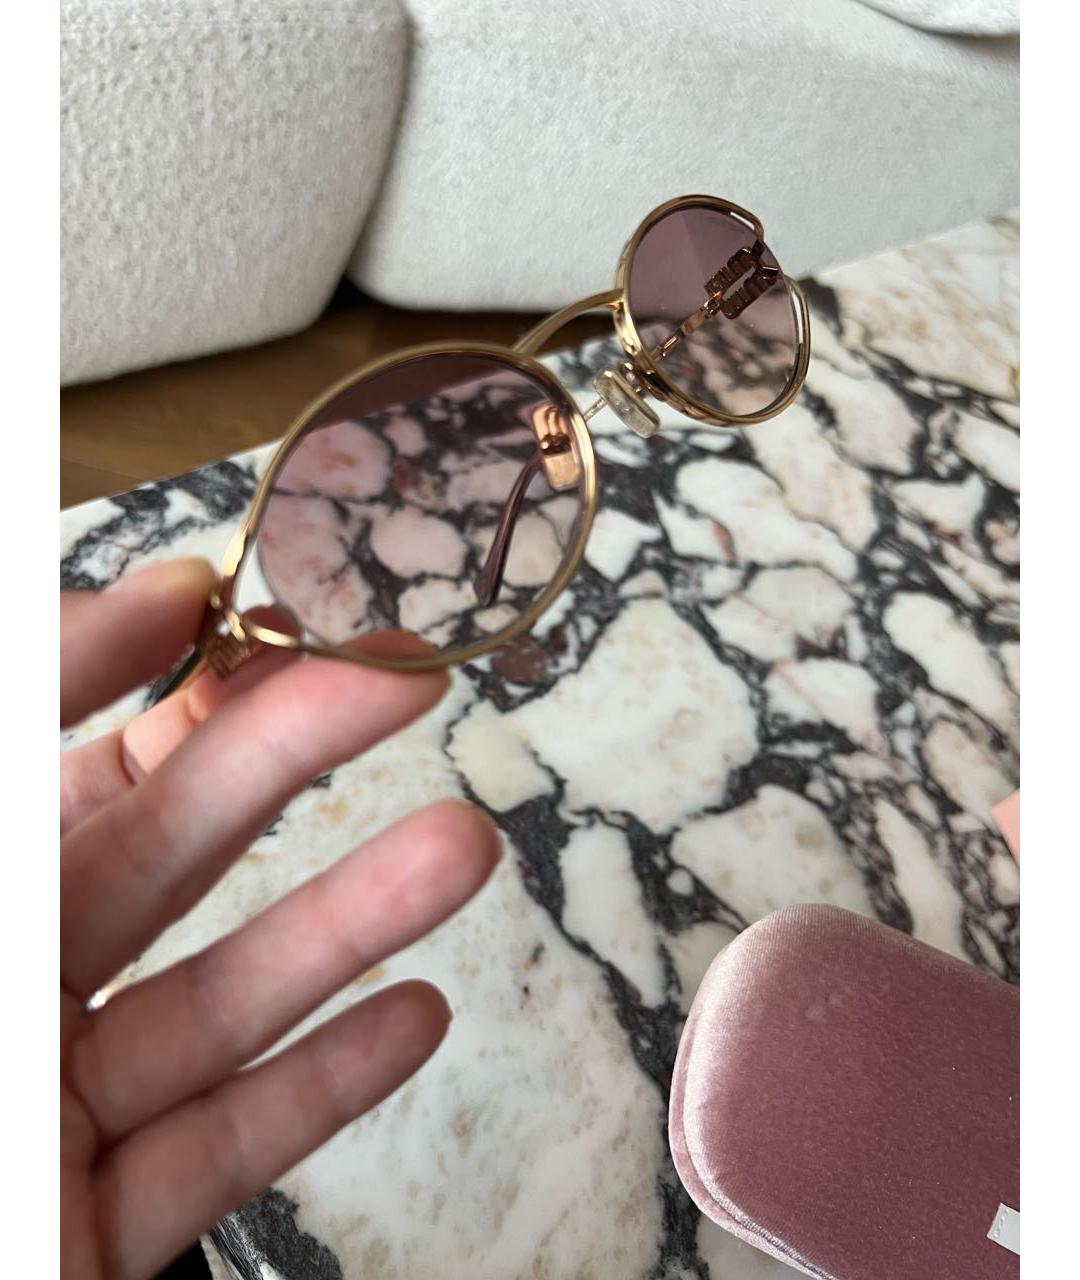 MIU MIU Розовые металлические солнцезащитные очки, фото 5